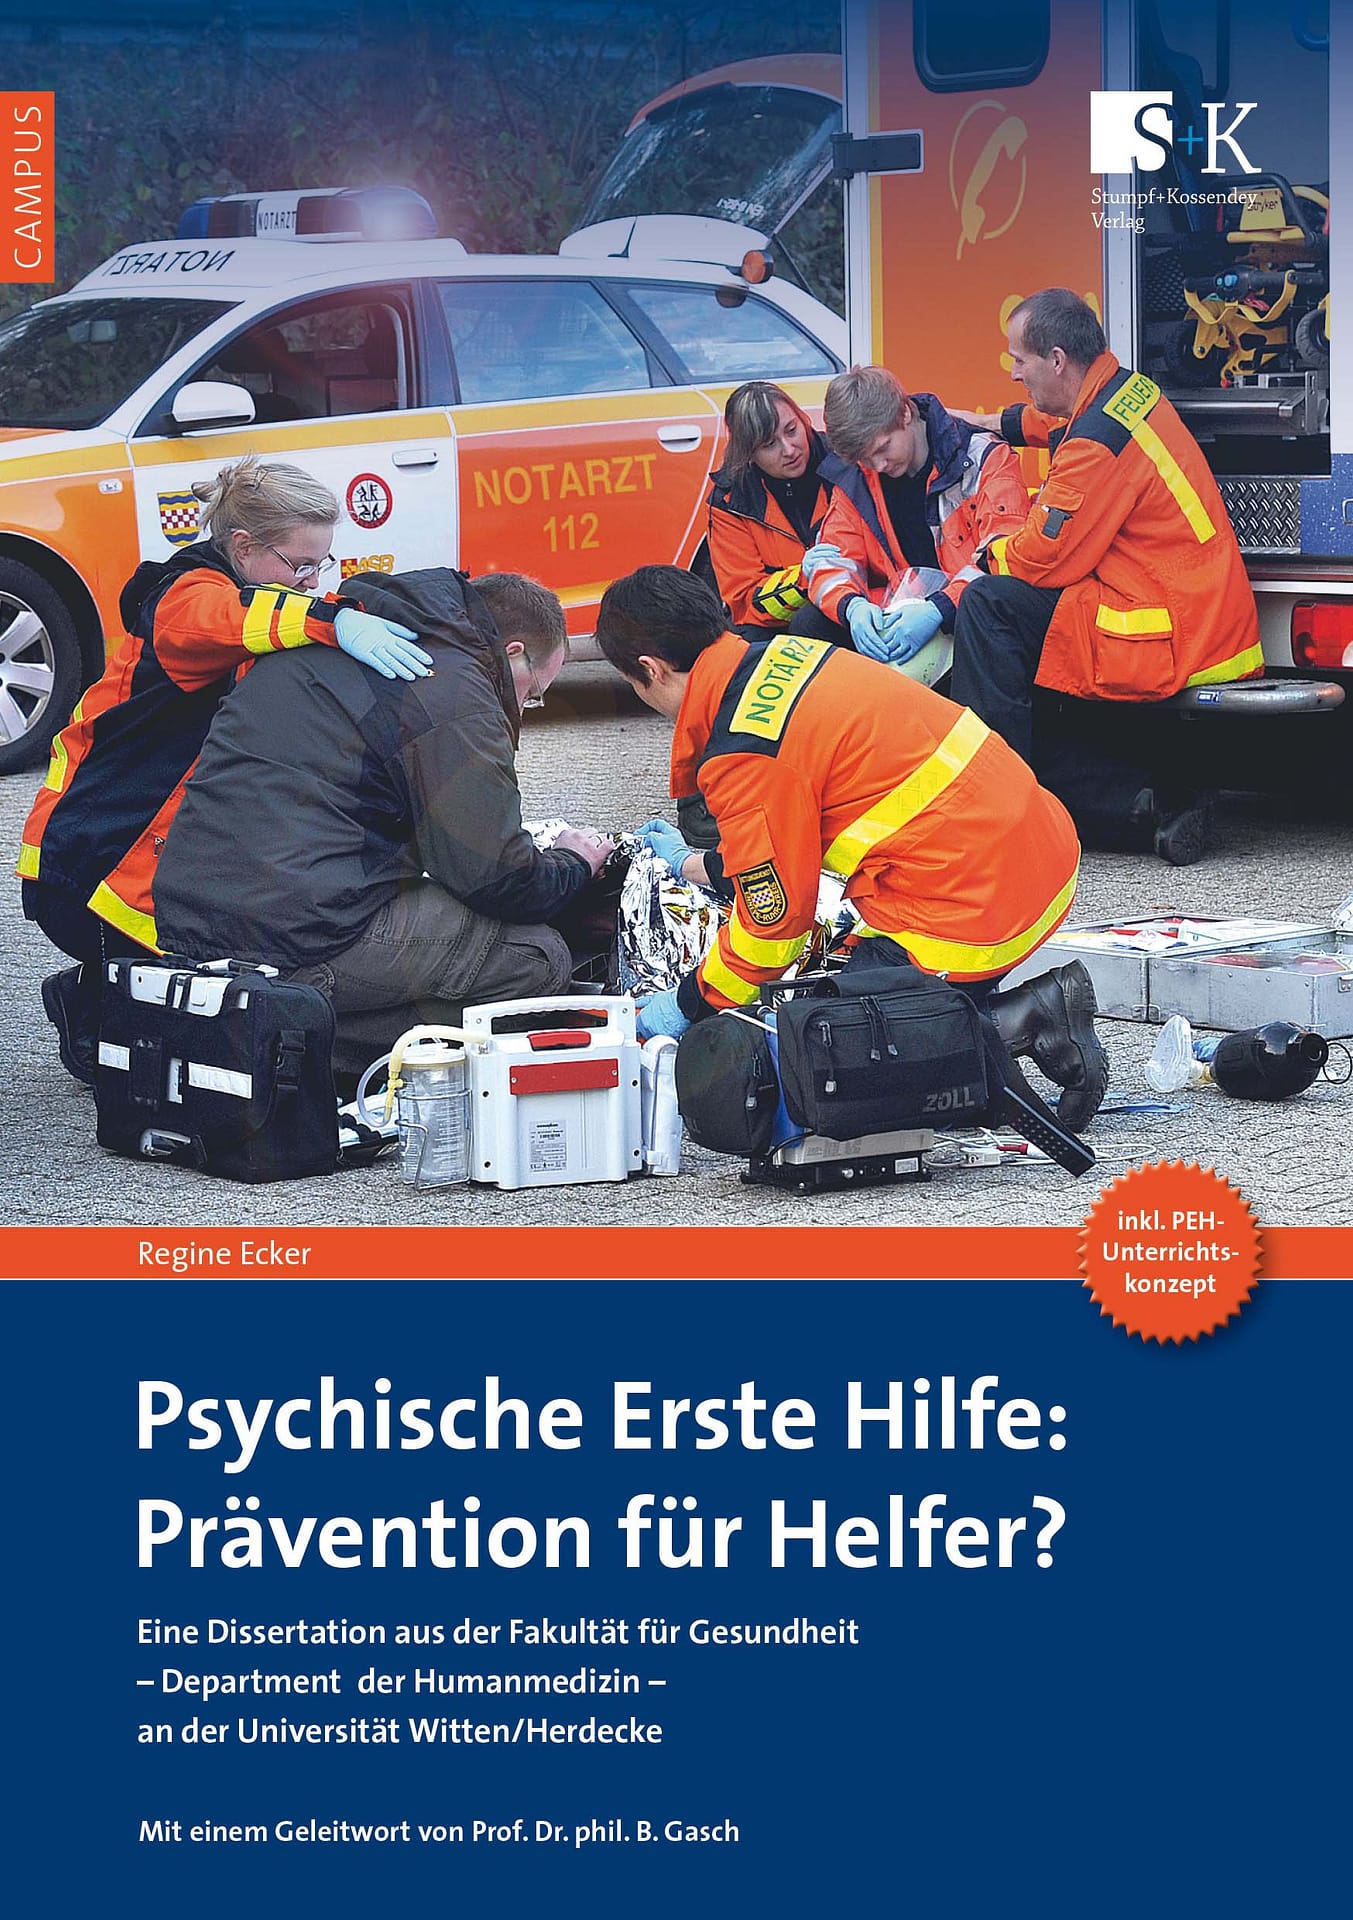 Psychische Erste Hilfe: Prävention für Helfer? – Dissertation